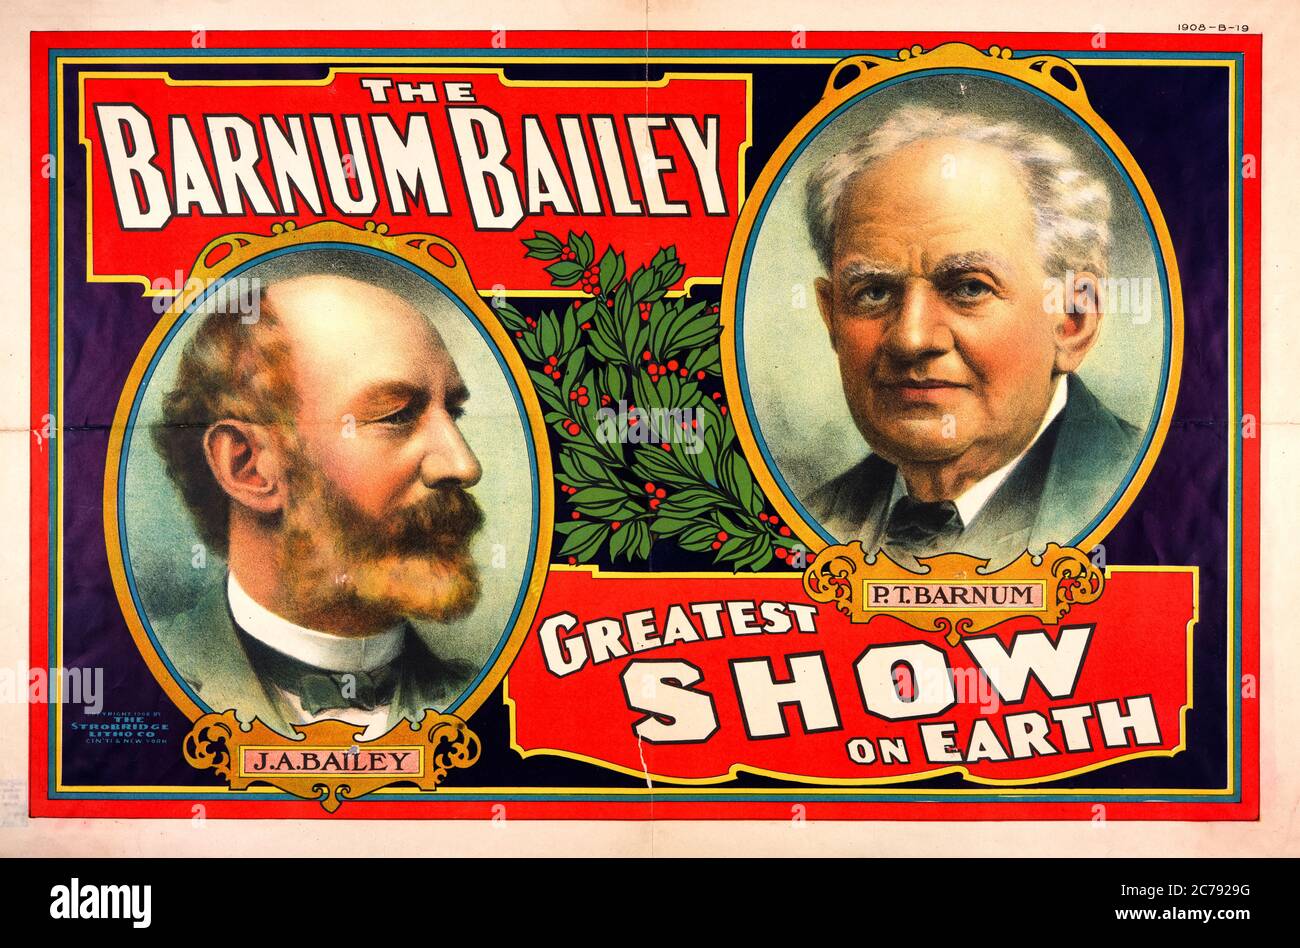 The, Barnum Bailey, plus grand spectacle sur terre, affiche de cirque avec portrait, 1908 Banque D'Images